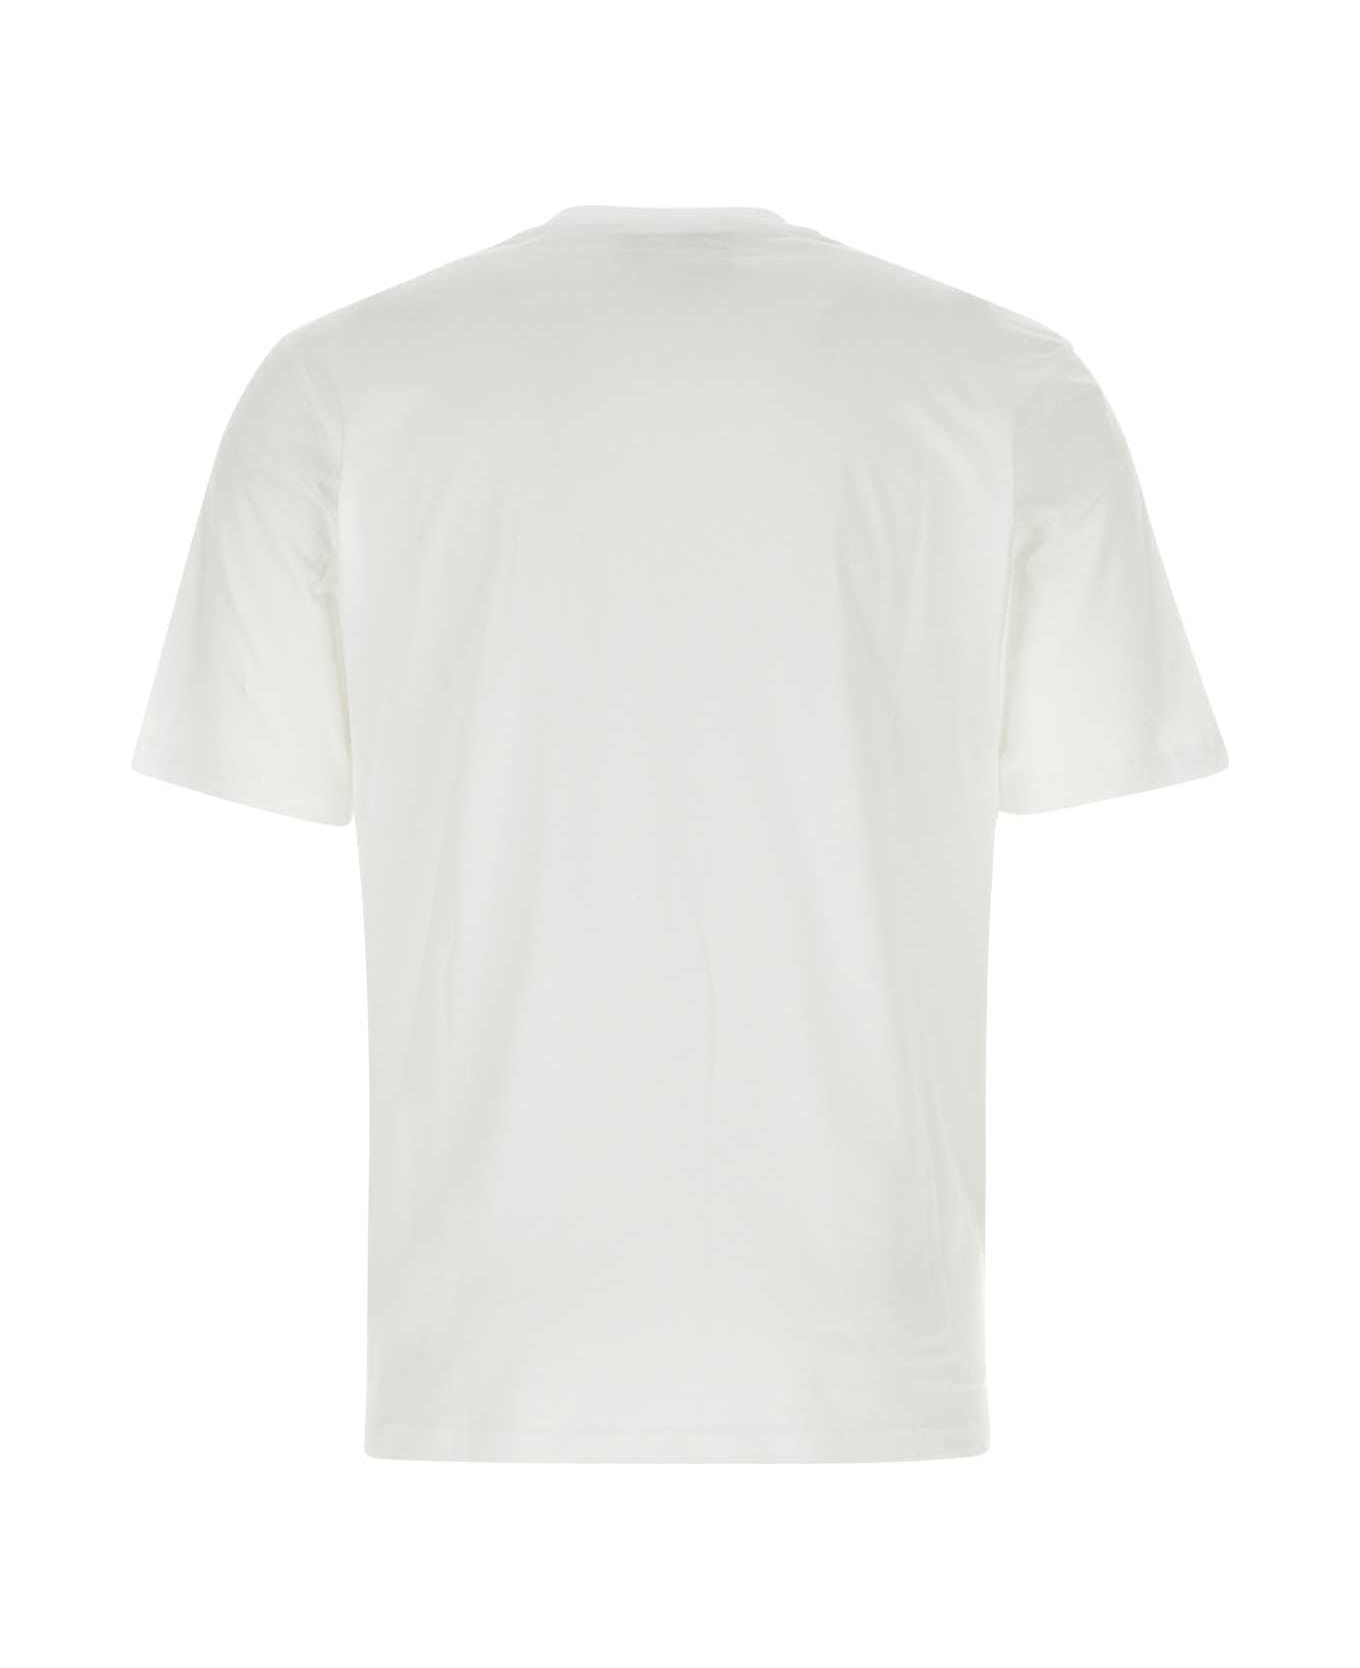 Moschino White Cotton Moschino X Smileyâ® T-shirt - 1001 シャツ